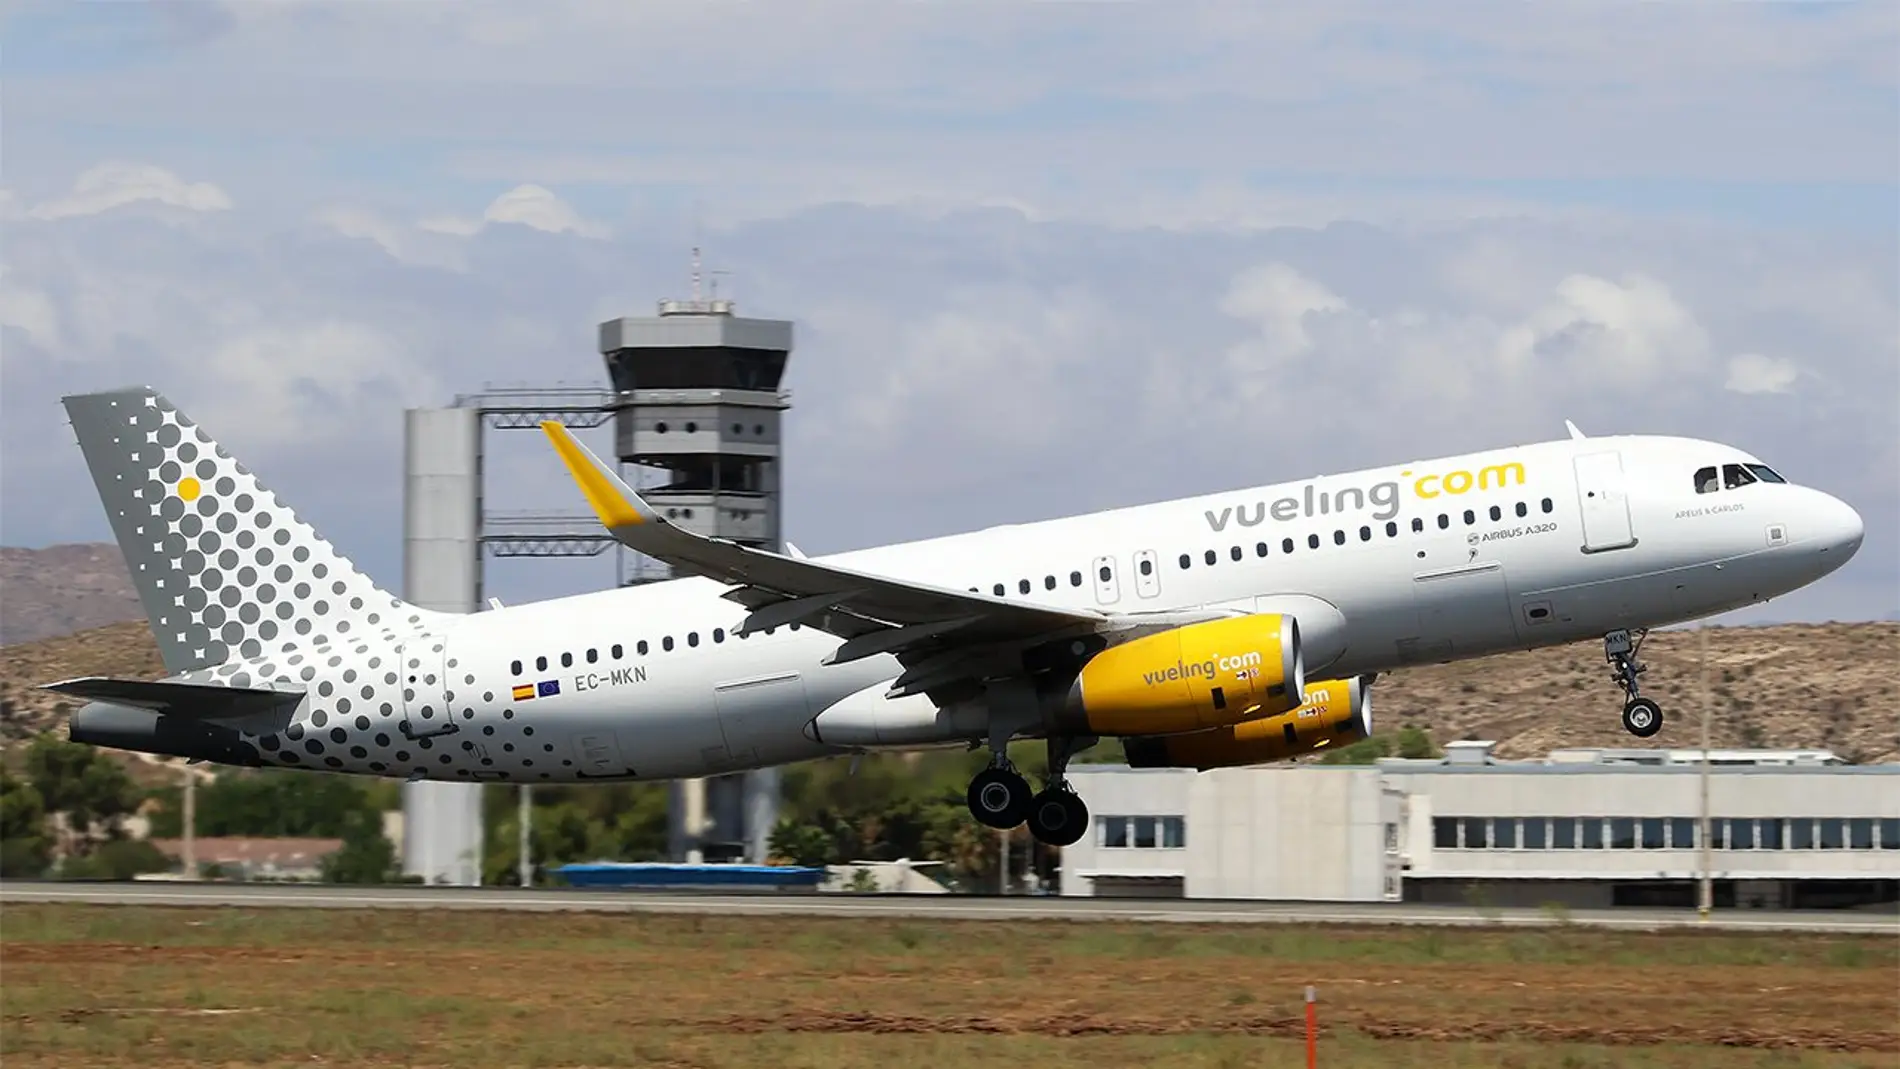 Avión despegando en el aeropuerto Alicante-Elche.